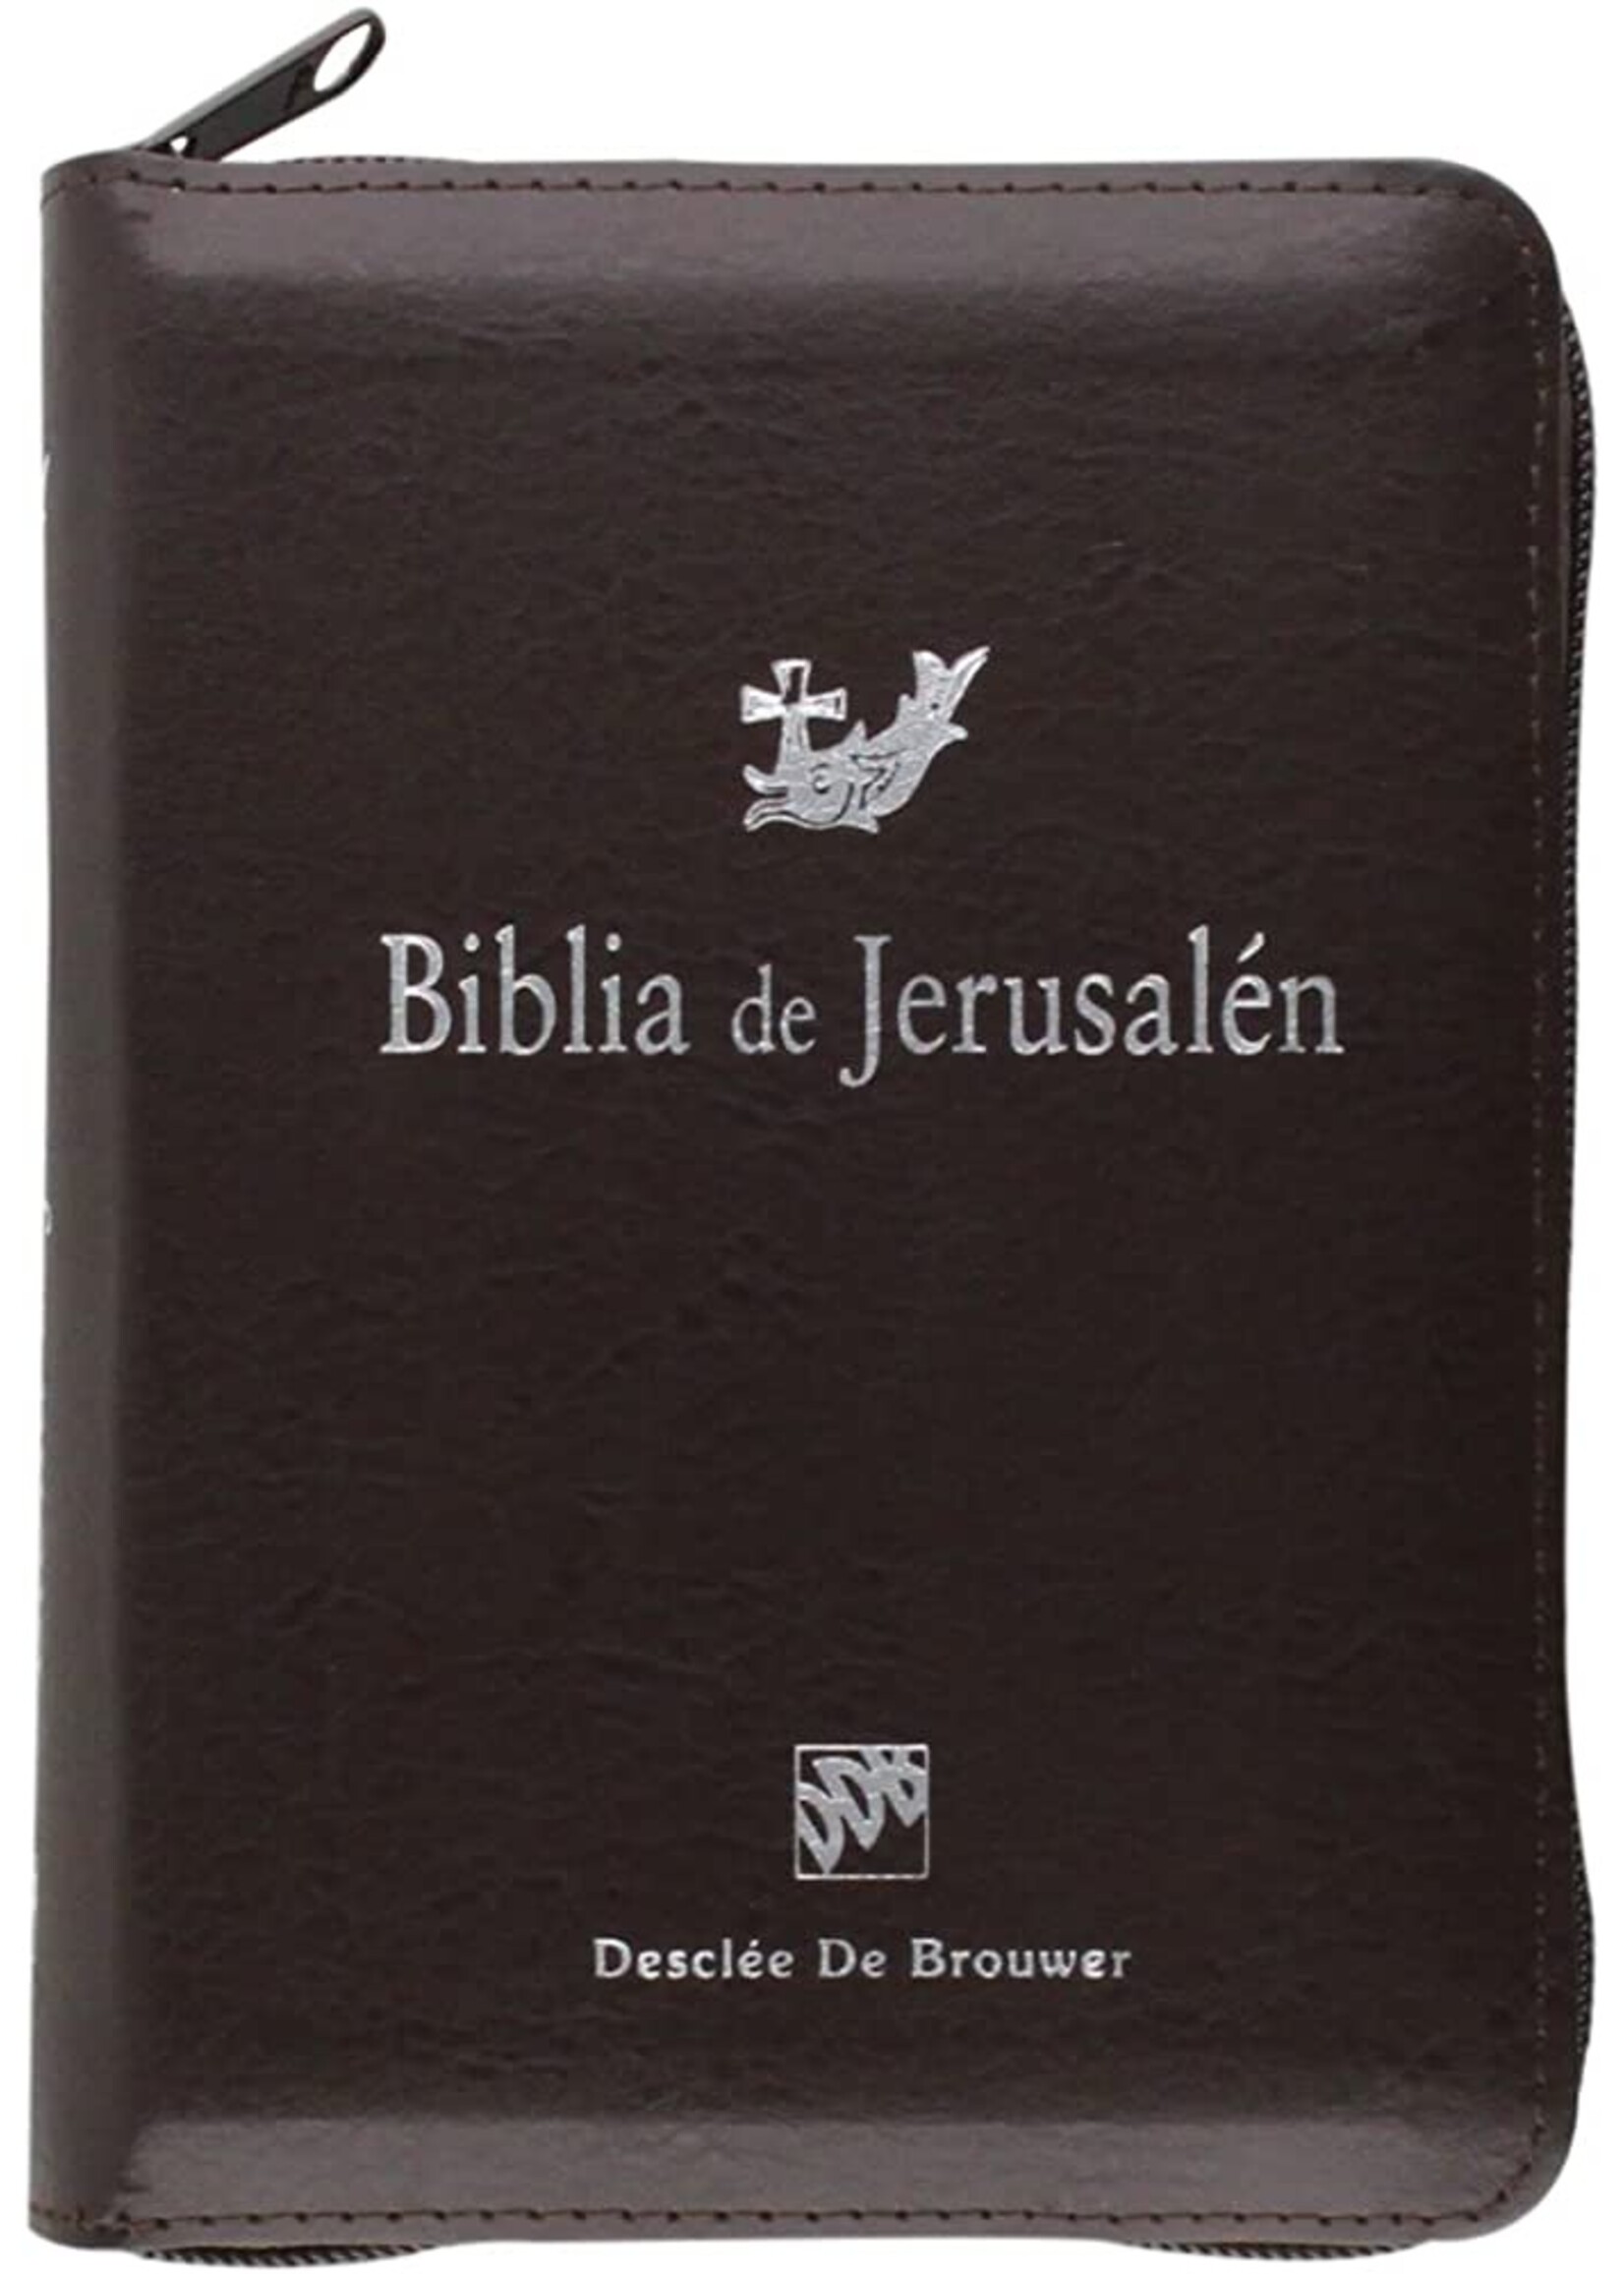 Biblia de Jerusalen - Bolsillo, funda cremallera